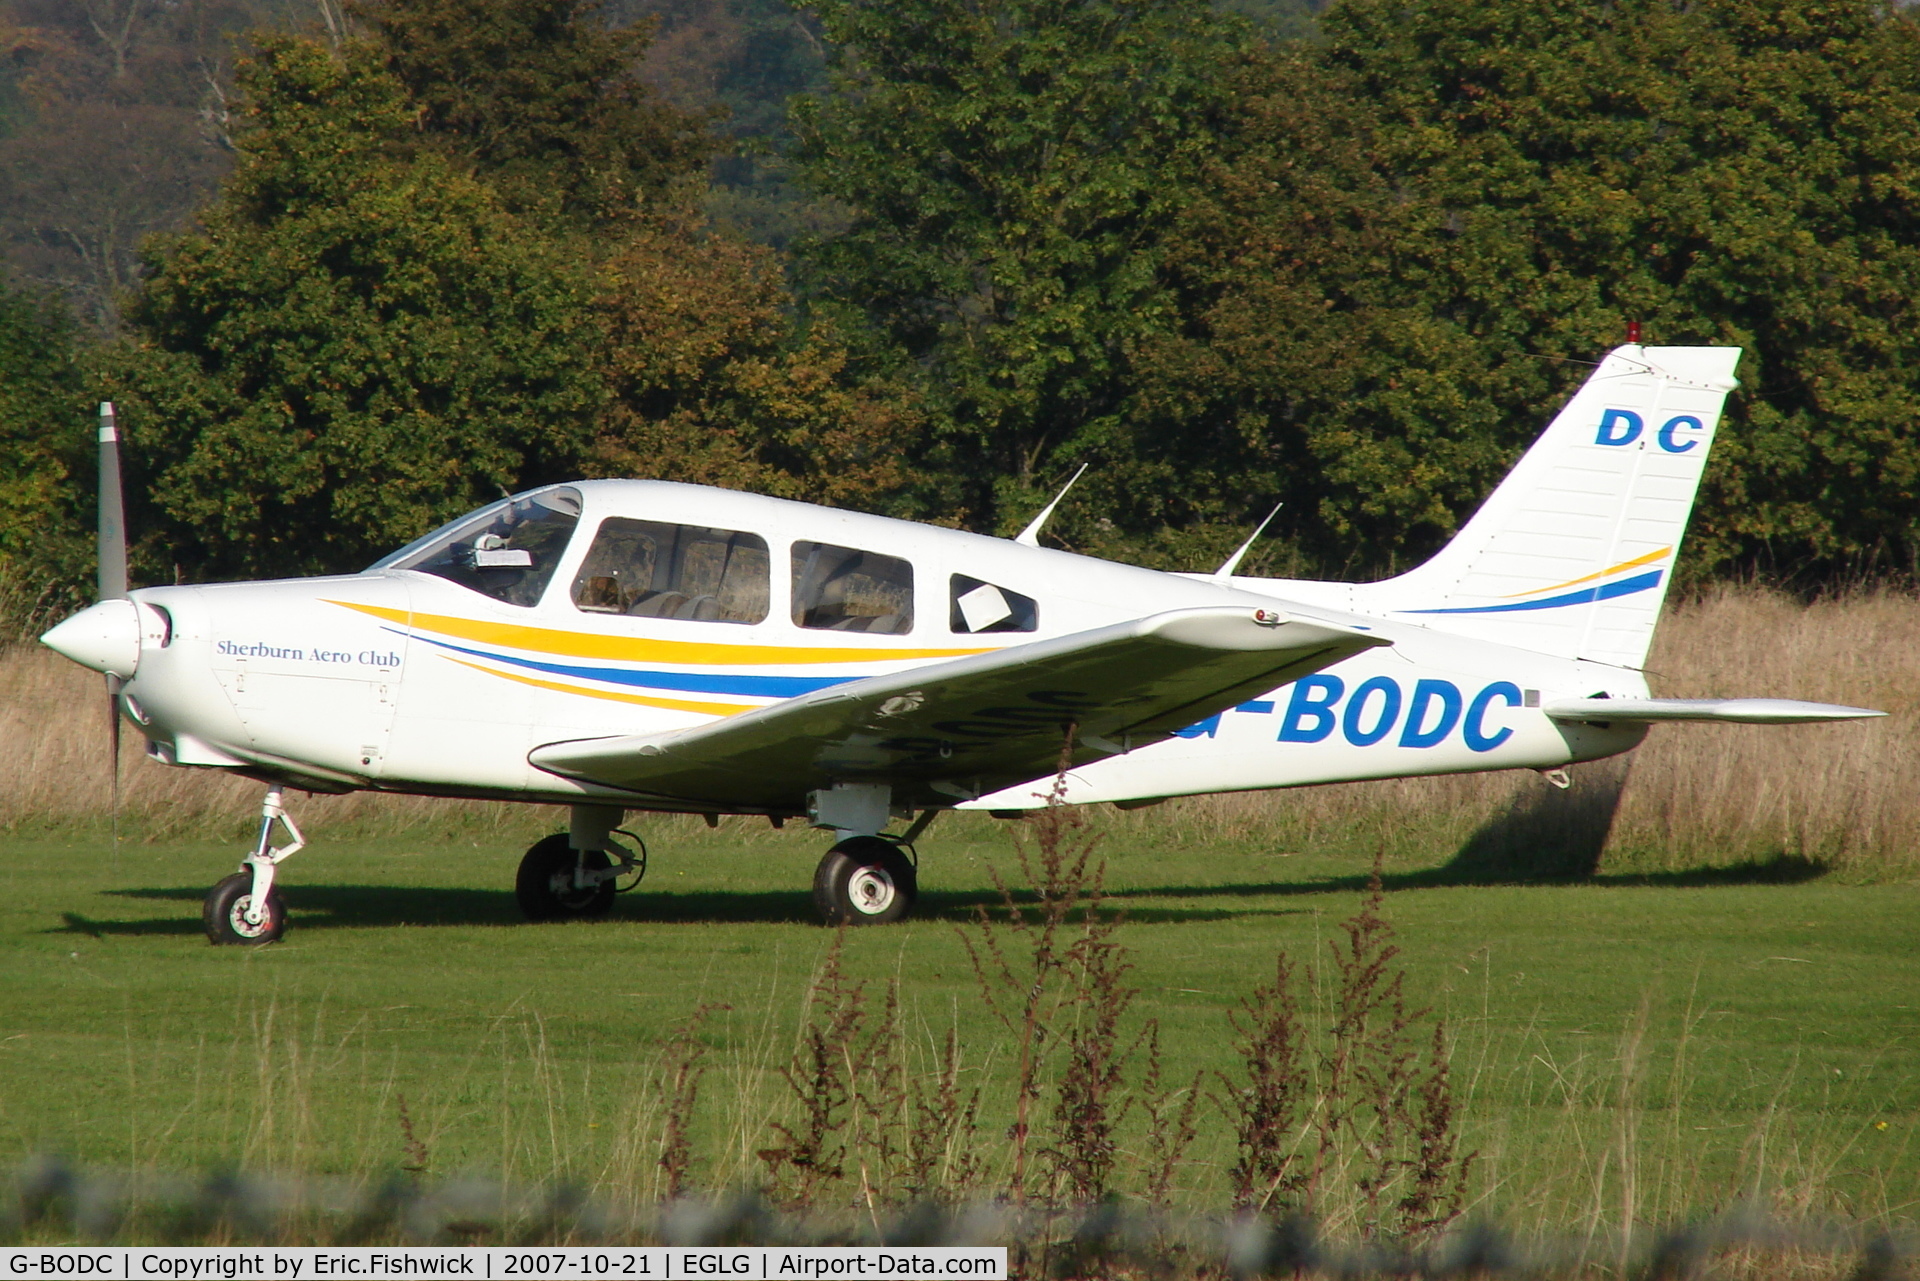 G-BODC, 1988 Piper PA-28-161 C/N 2816041, 1. G-BODC at Panshanger